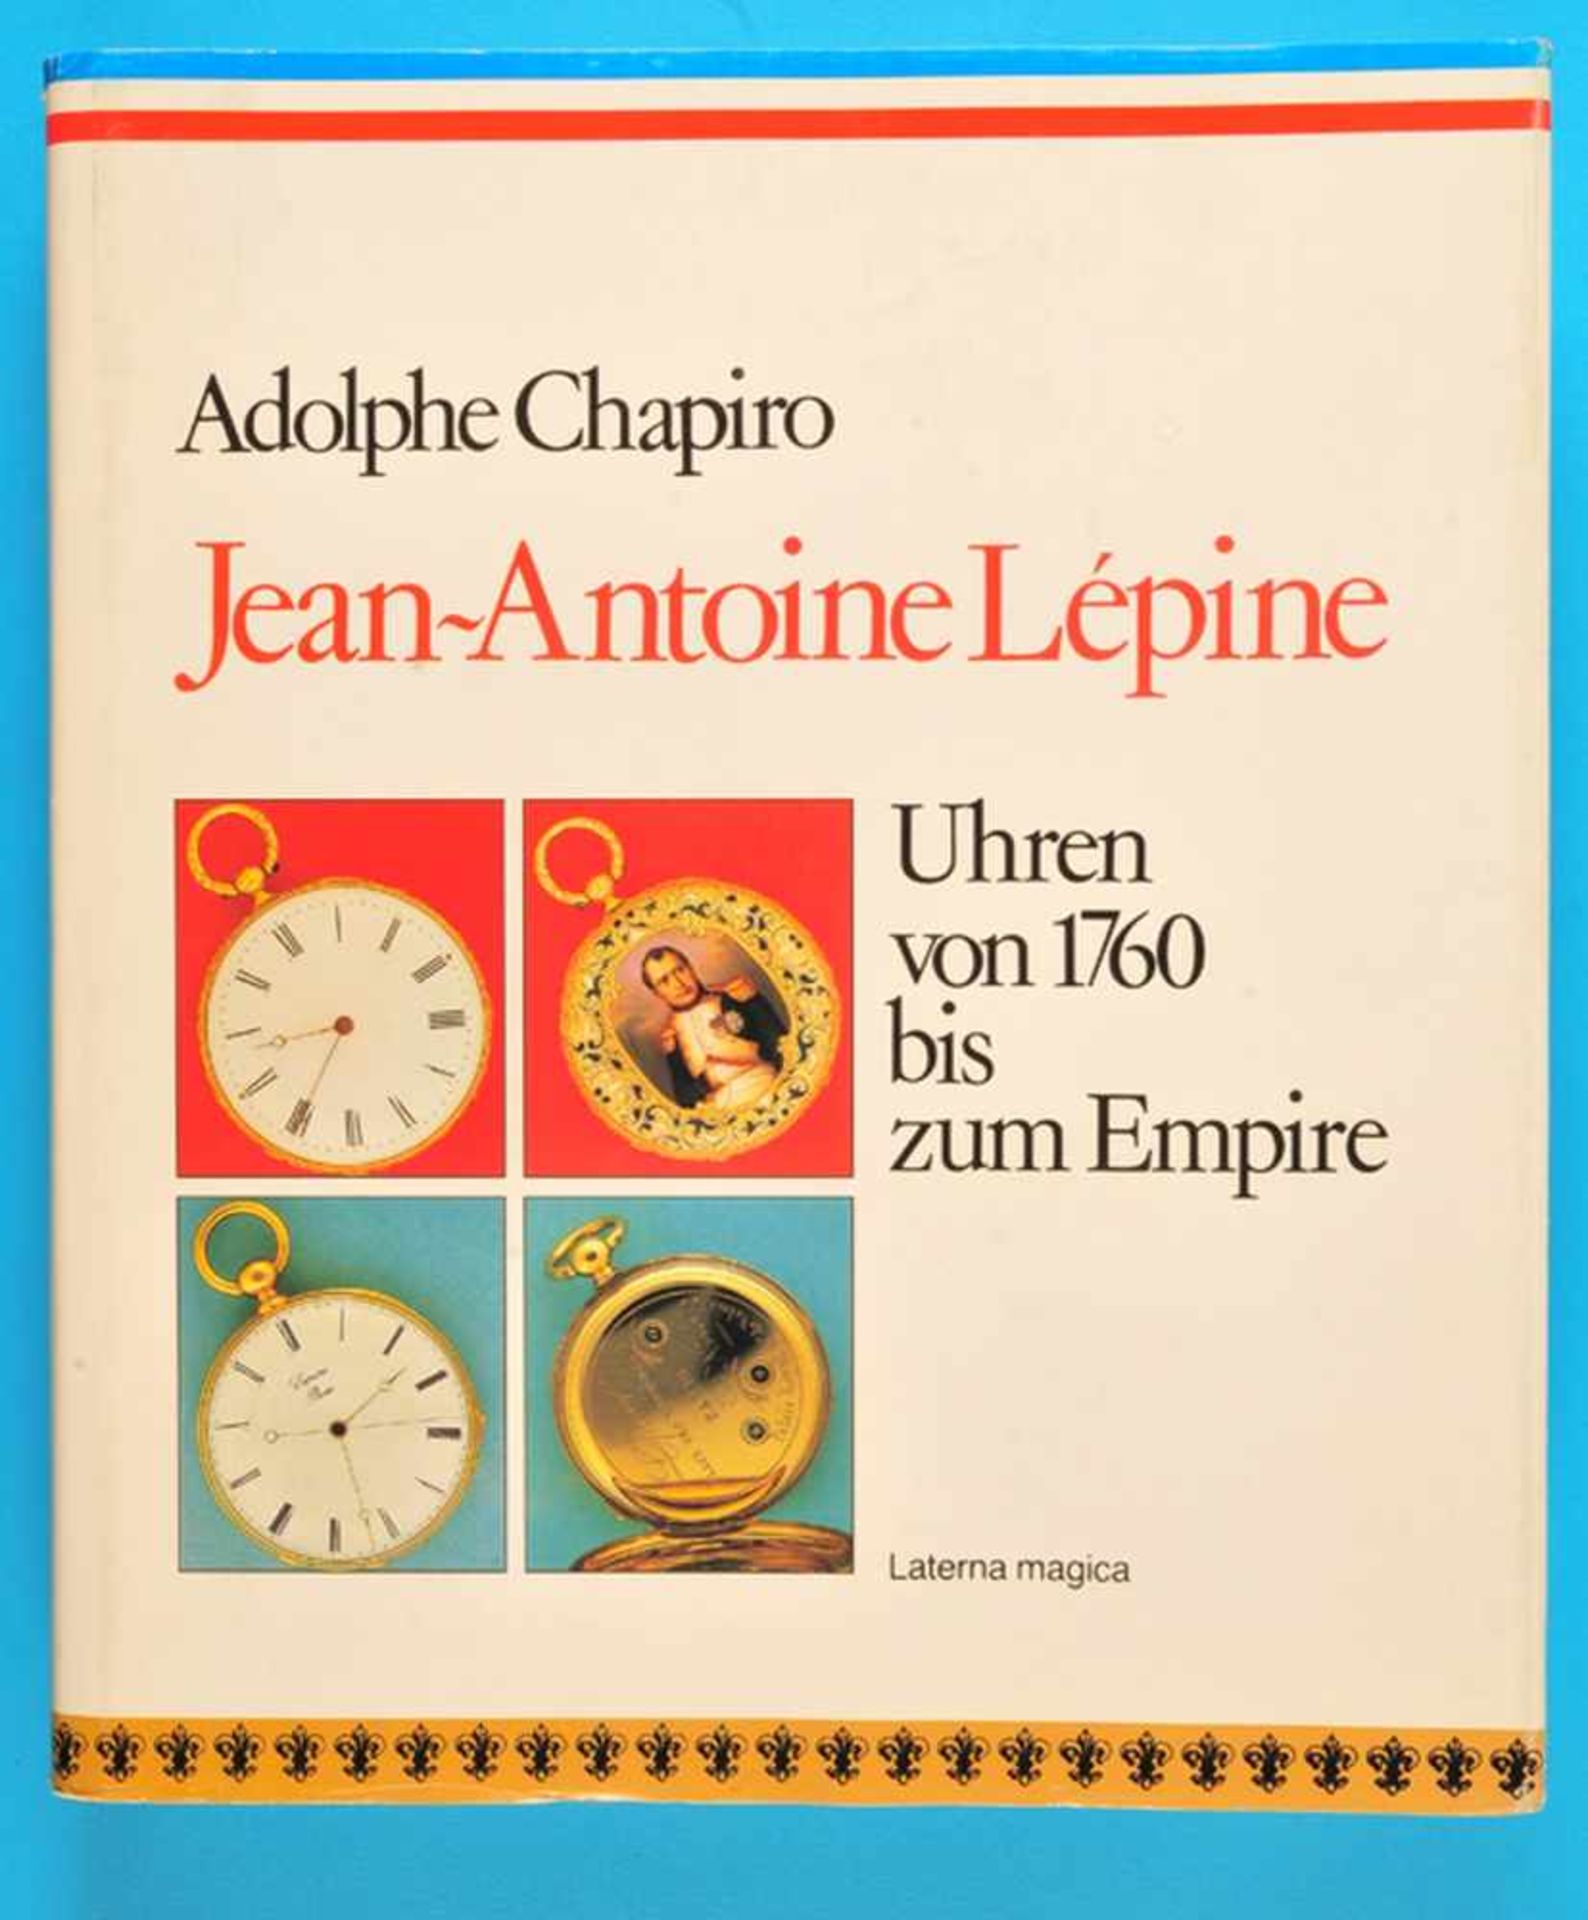 Adolphe Chapiro, Jean Antoine Lépine, Uhren von 1760 bis zum Empire, 1989, 279 Seiten mit vielen s/